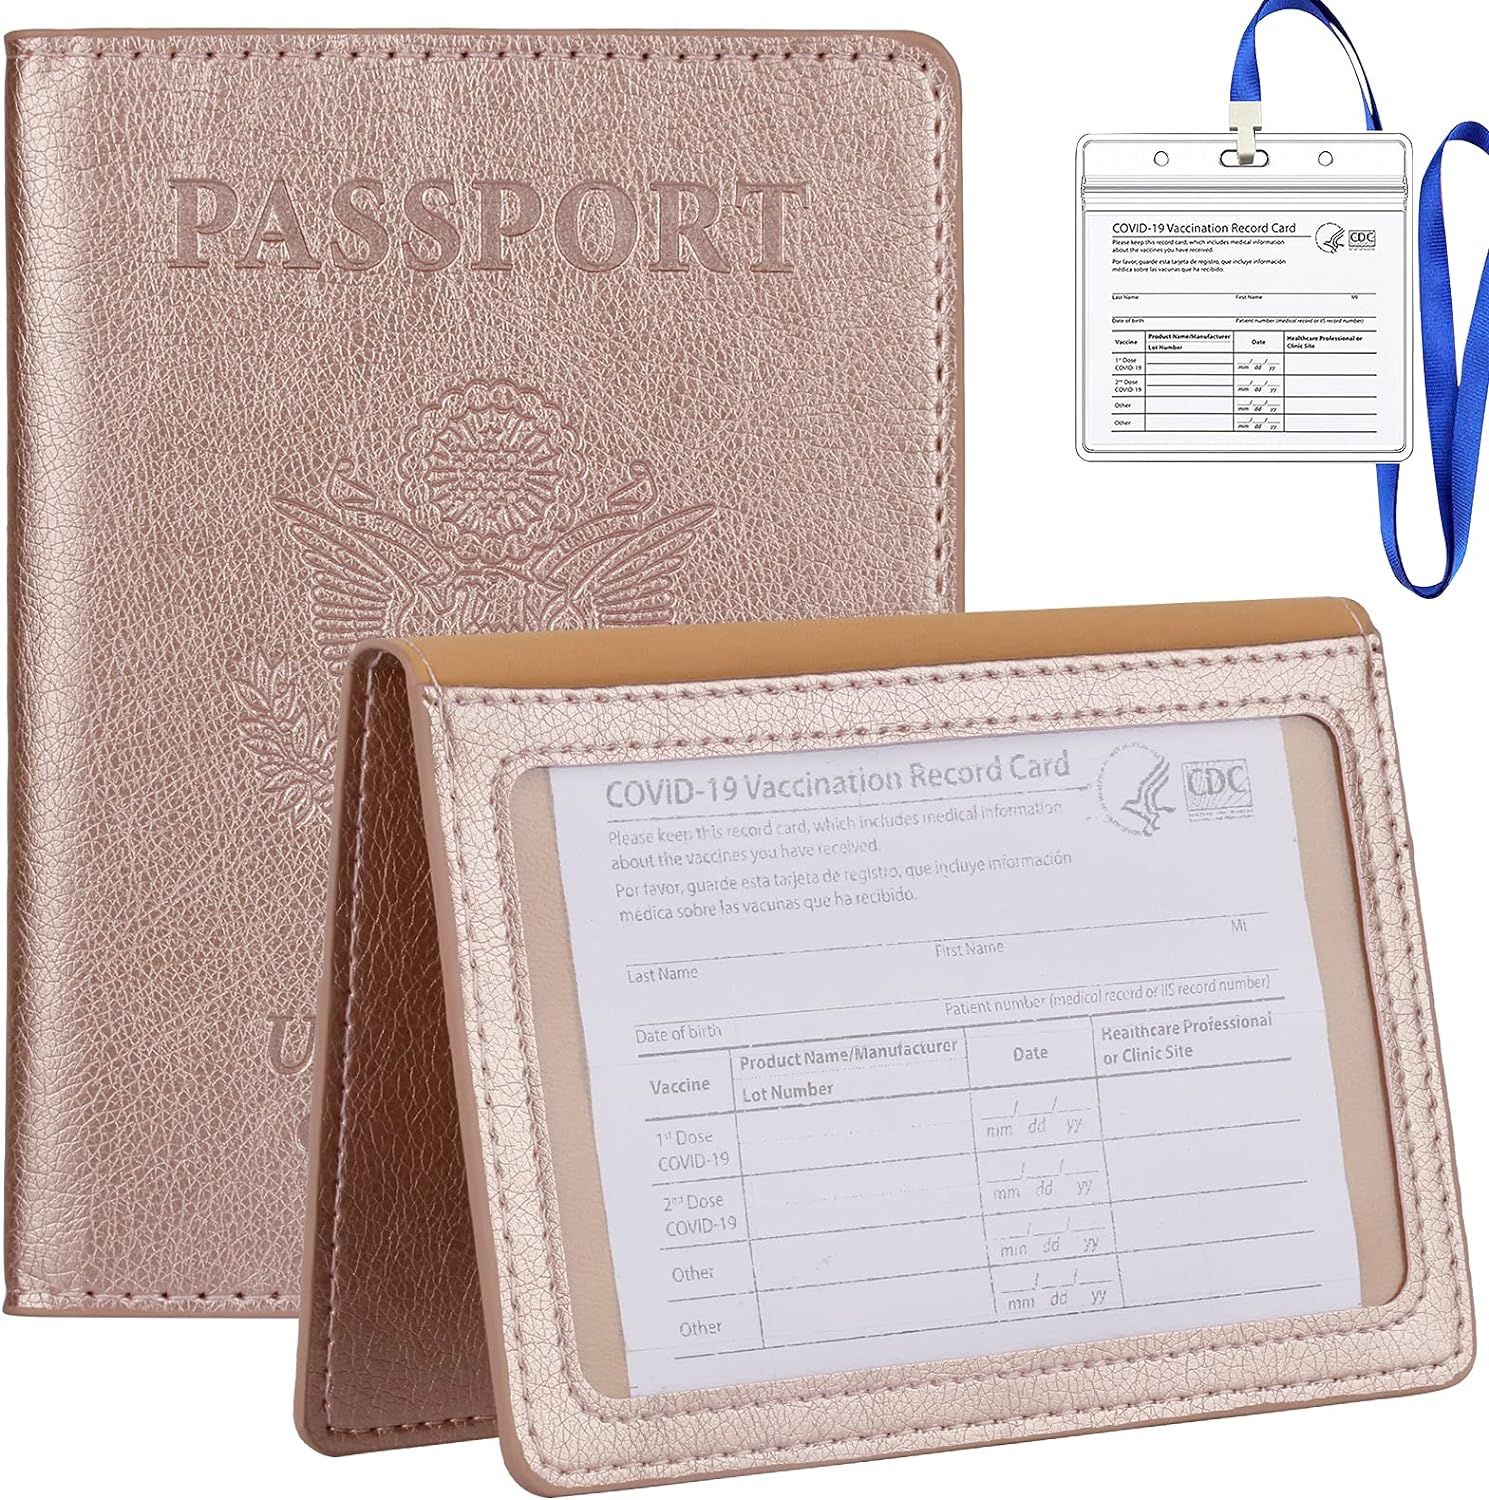 TIGARI Passport Wallets Passport Covers, Passport and Vaccine Card Holder Combo, Ultra Slim Passp... | Amazon (US)